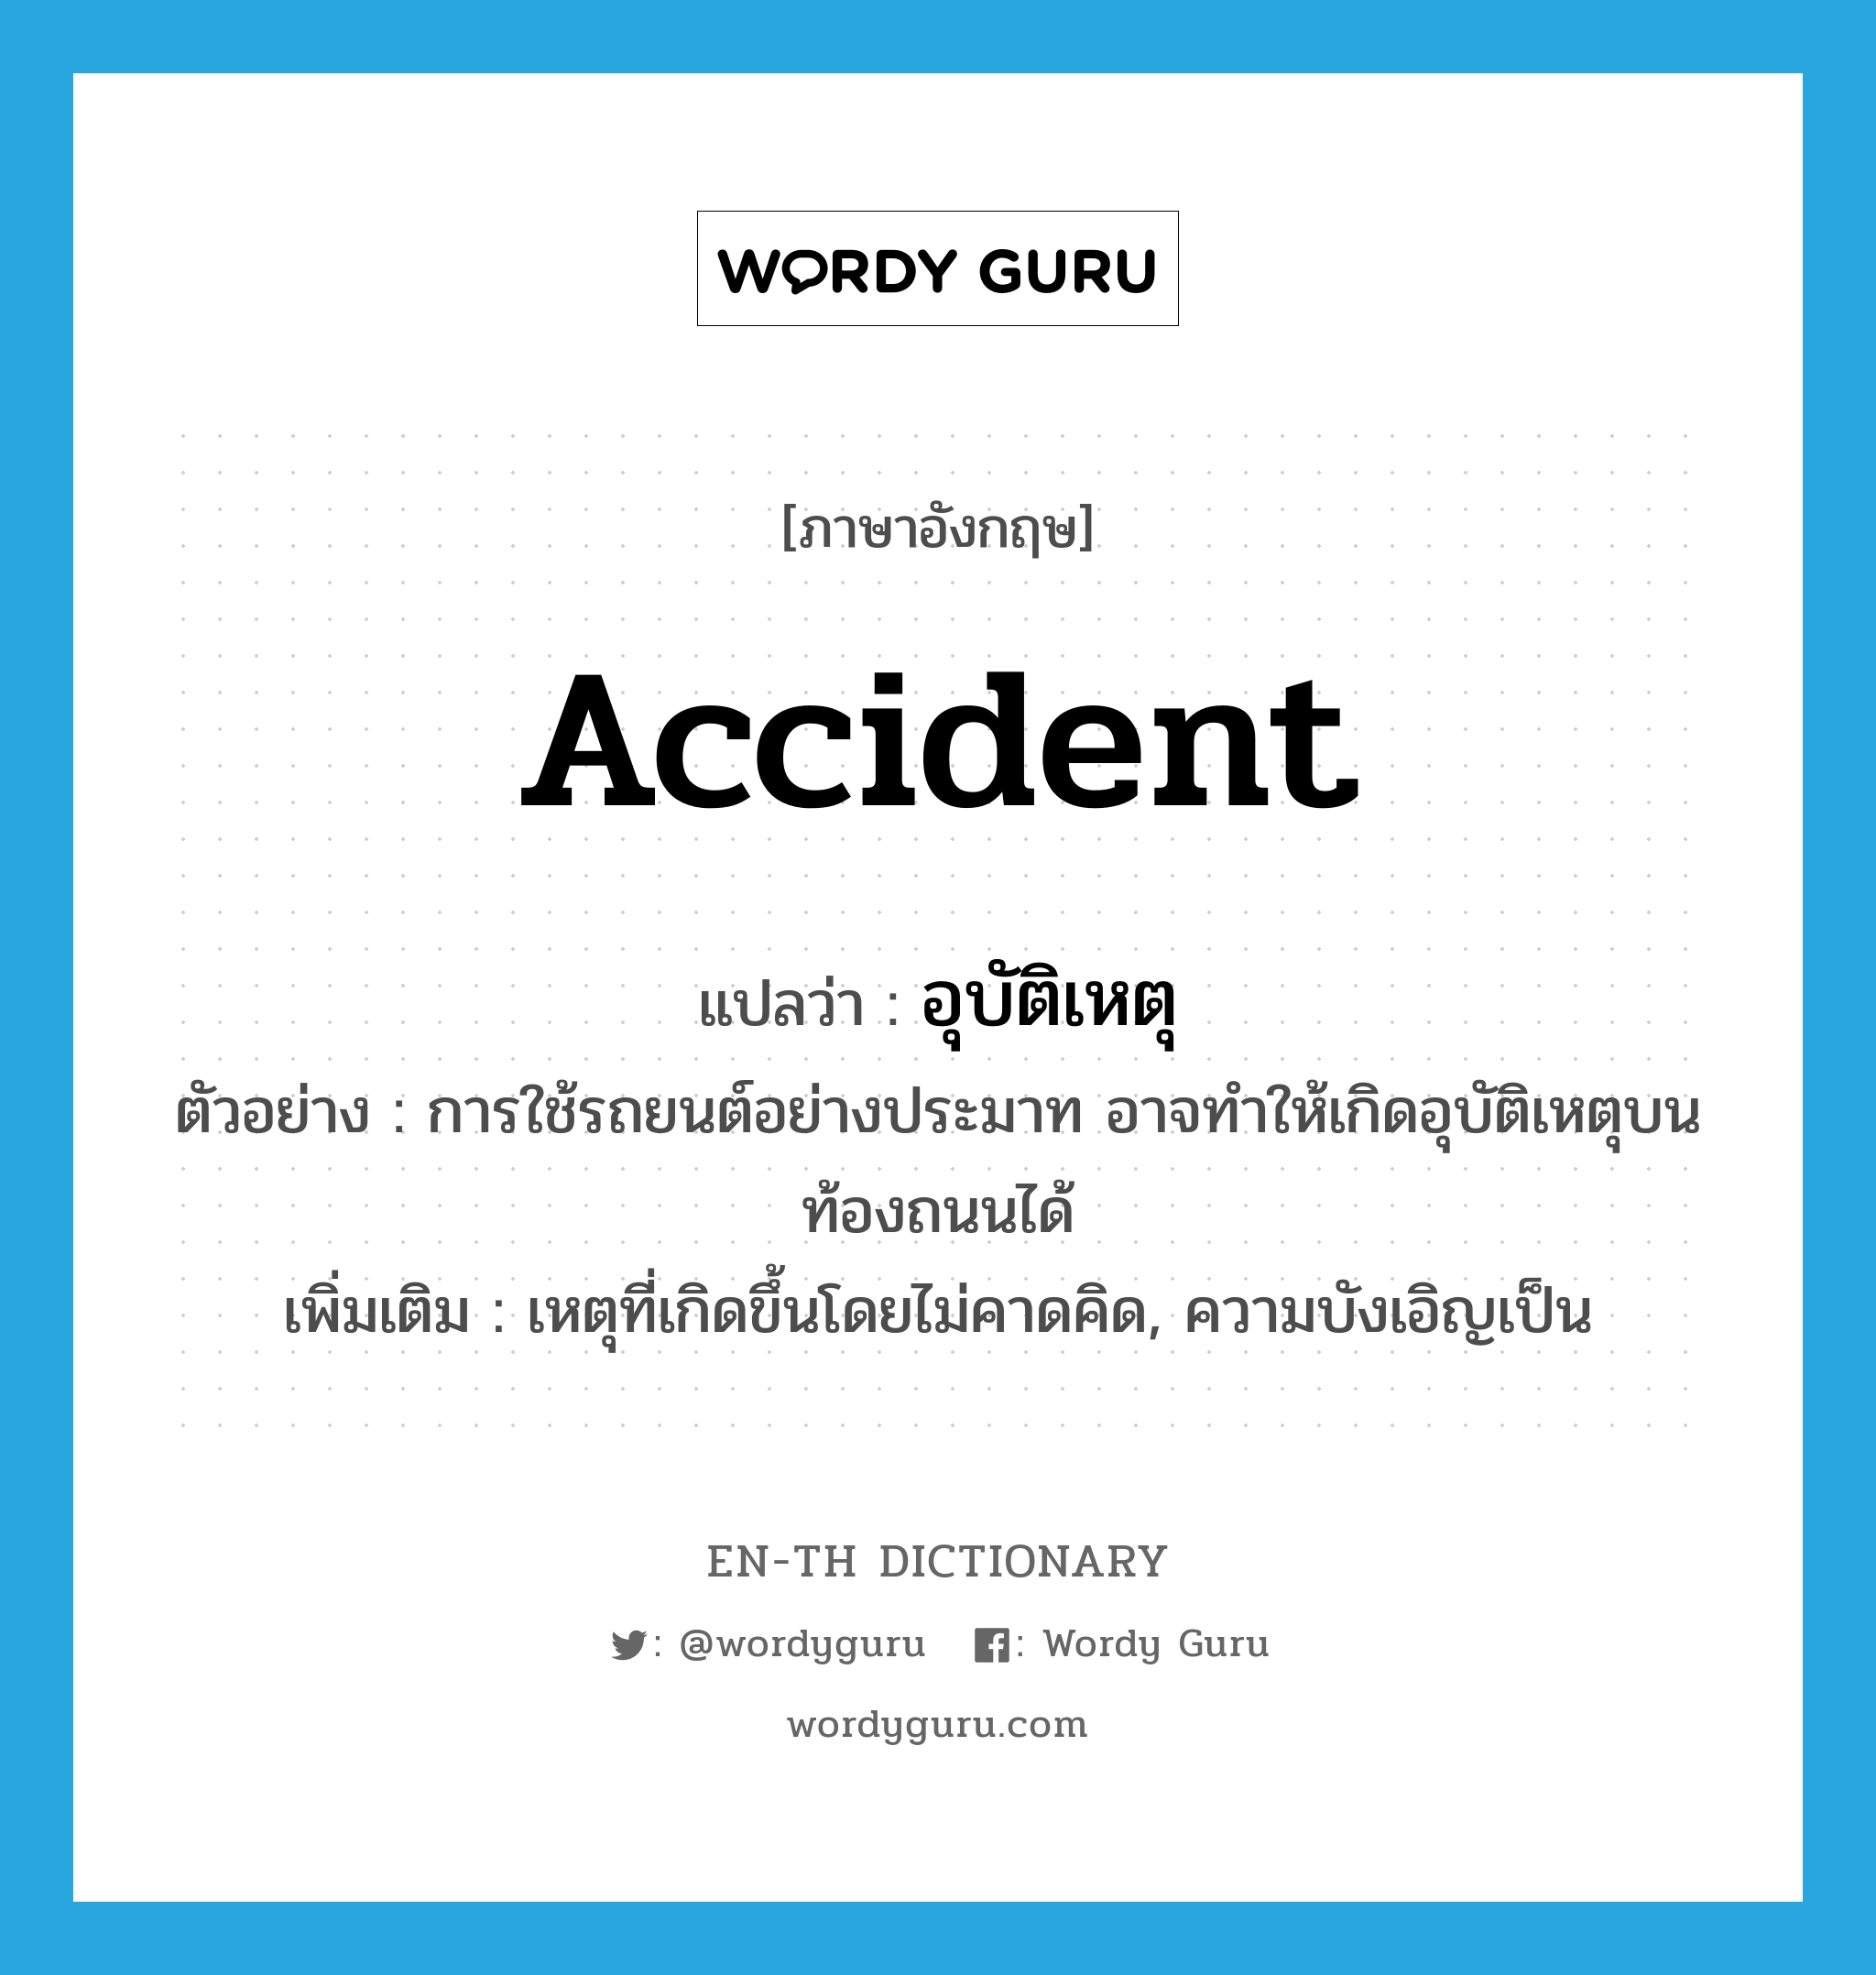 อุบัติเหตุ ภาษาอังกฤษ?, คำศัพท์ภาษาอังกฤษ อุบัติเหตุ แปลว่า accident ประเภท N ตัวอย่าง การใช้รถยนต์อย่างประมาท อาจทำให้เกิดอุบัติเหตุบนท้องถนนได้ เพิ่มเติม เหตุที่เกิดขึ้นโดยไม่คาดคิด, ความบังเอิญเป็น หมวด N